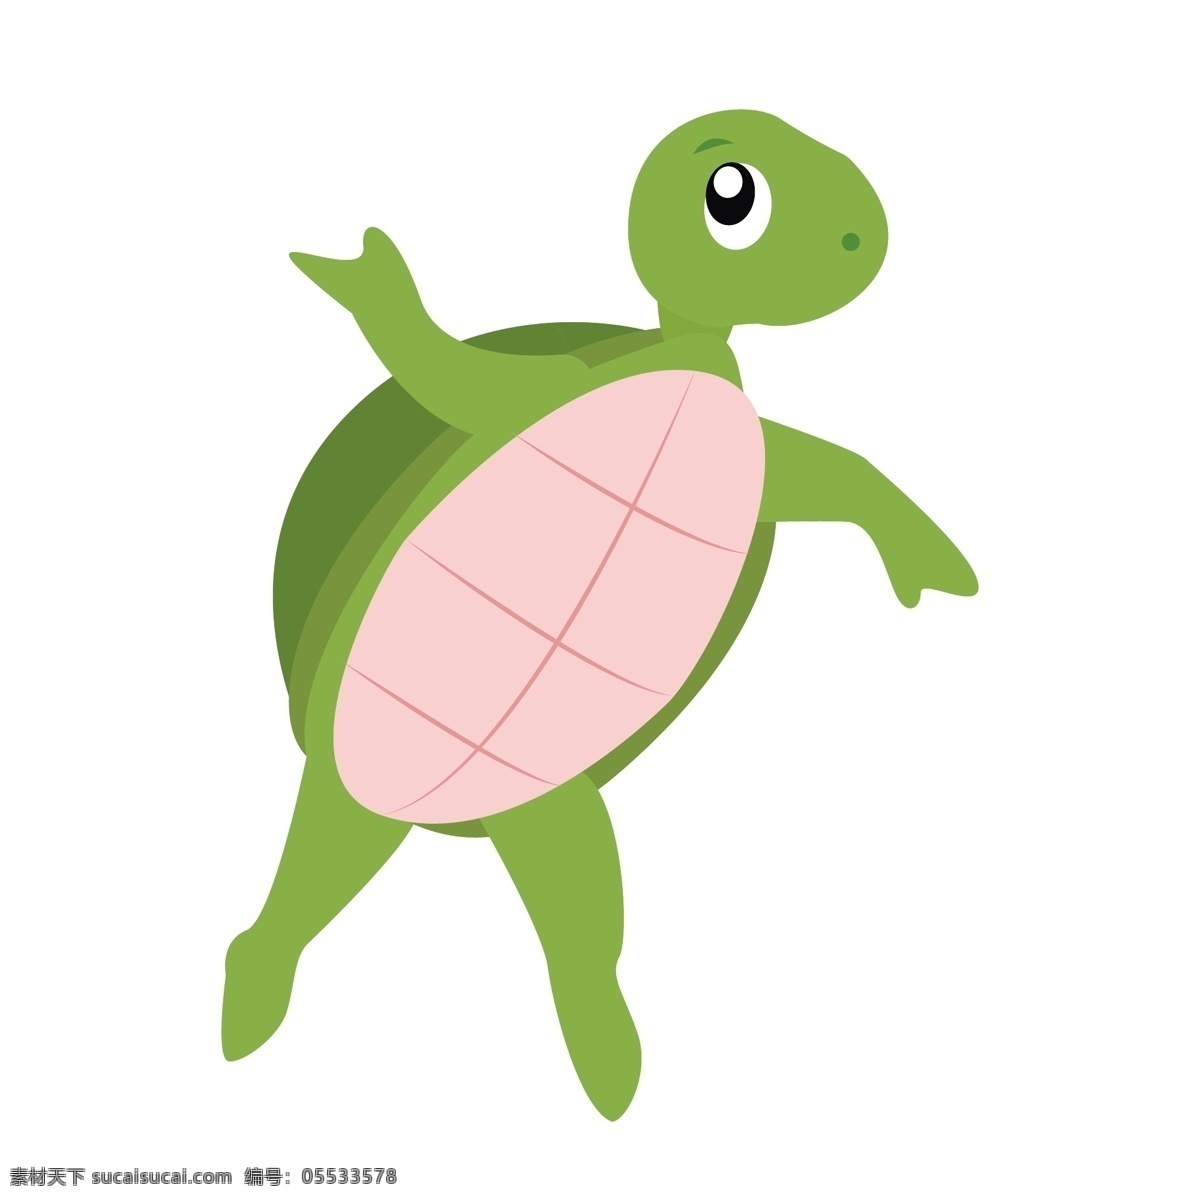 可爱 小 乌龟 矢量 可爱的乌龟 站立的乌龟 小清新 动物 卡通 手绘 卡通乌龟